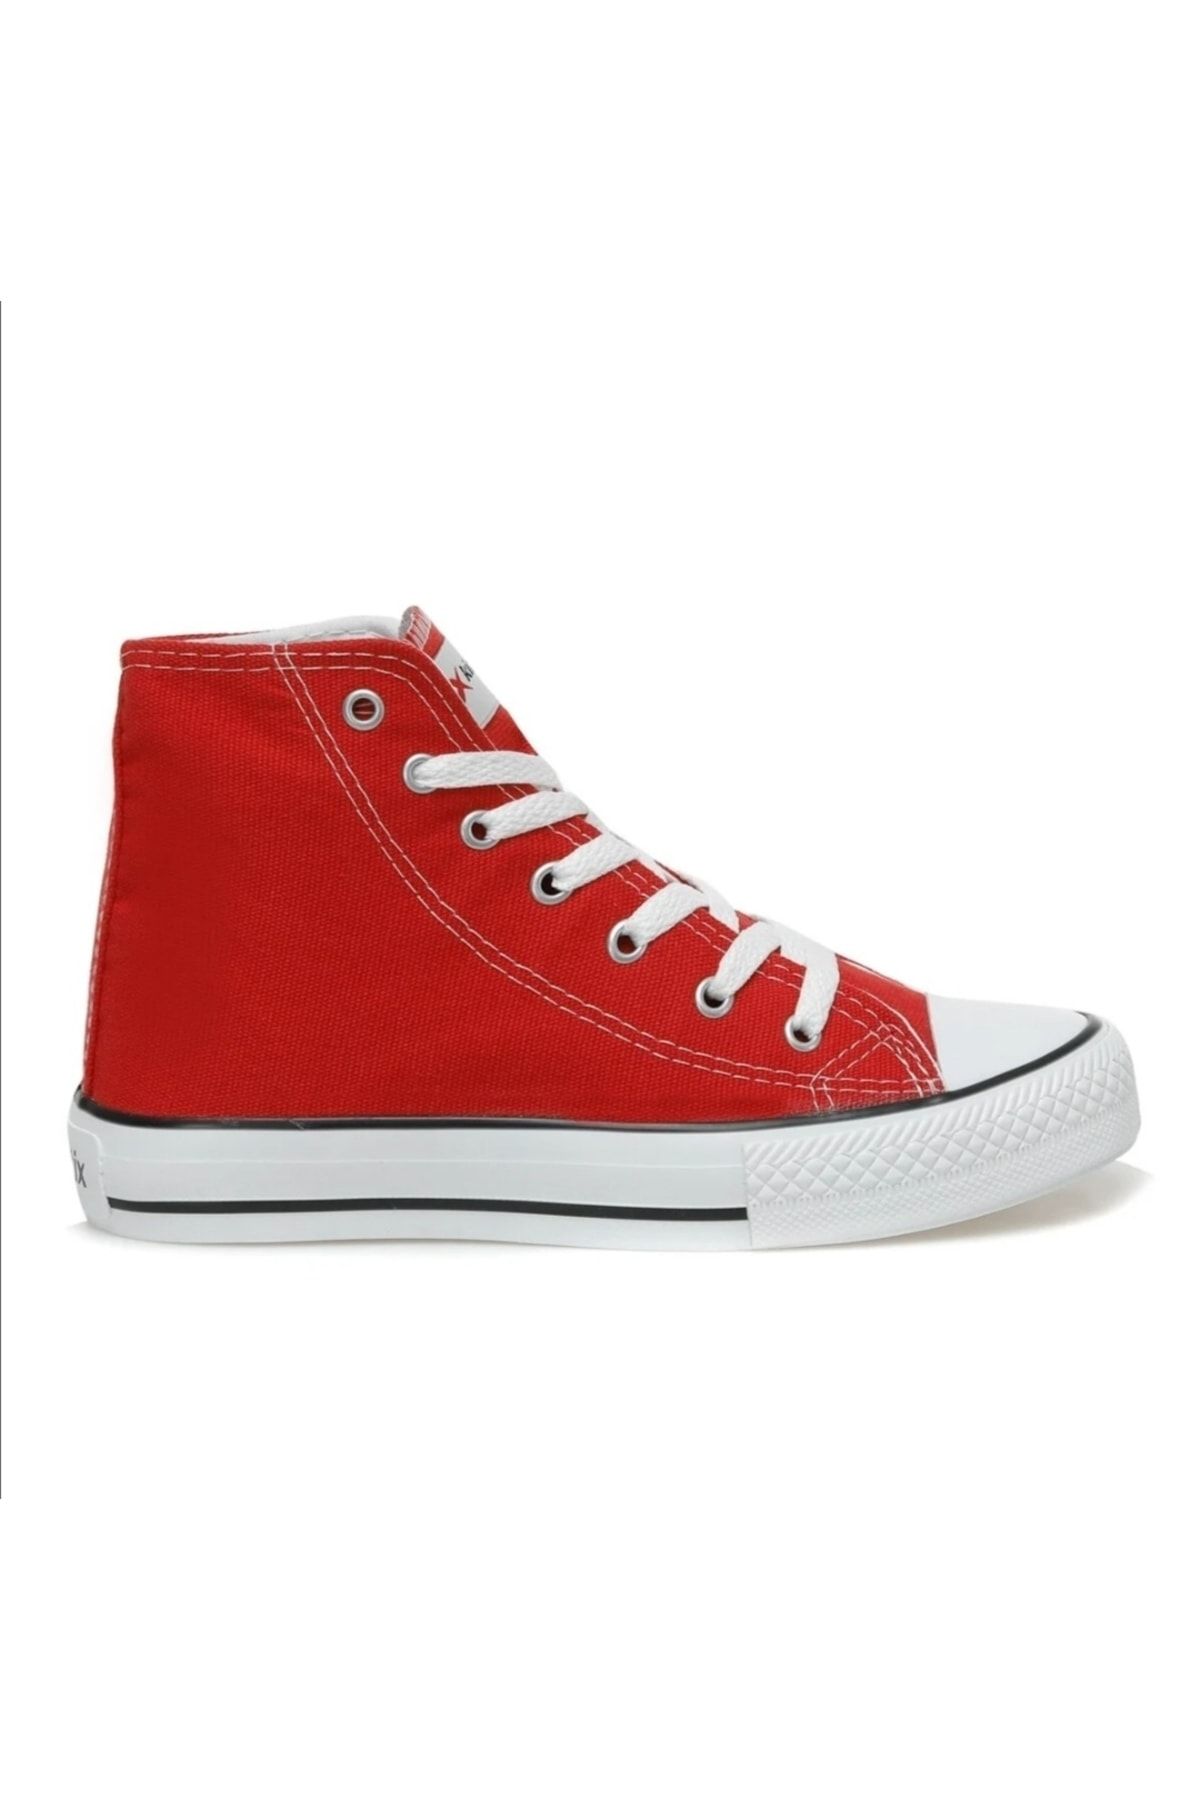 Kinetix Fowler Tx Hı W 3fx Kırmızı High Sneaker